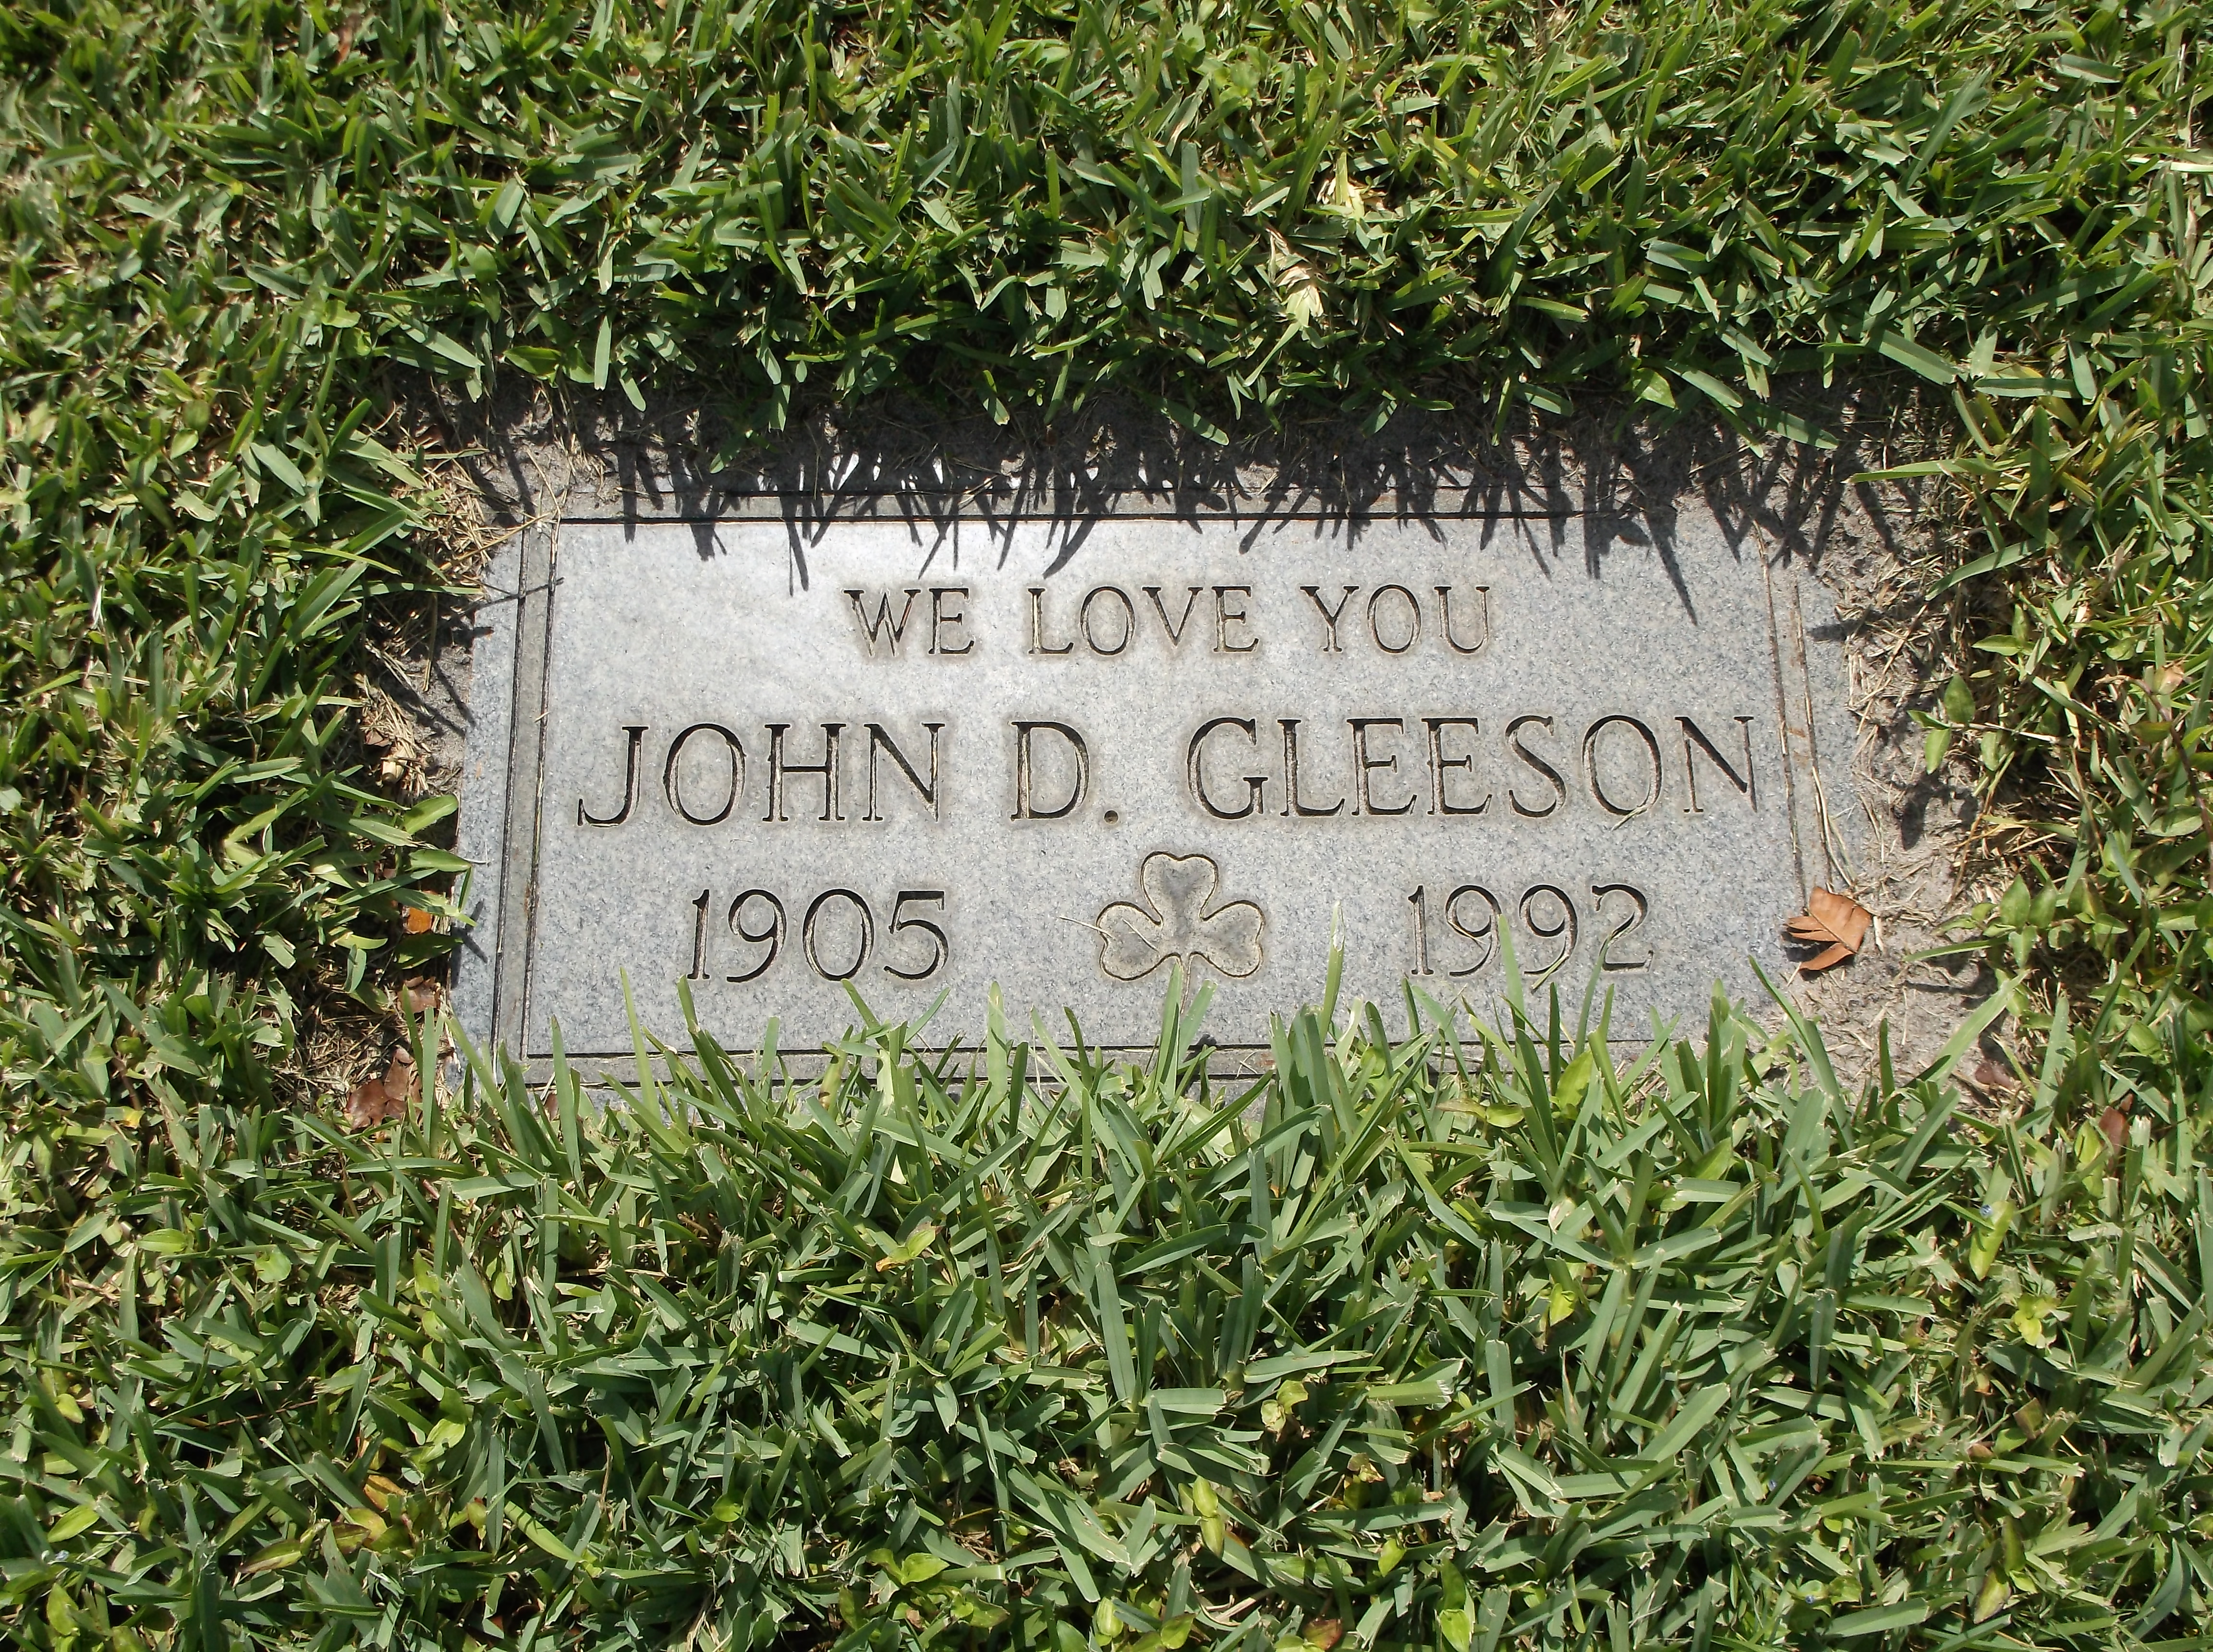 John D Gleeson